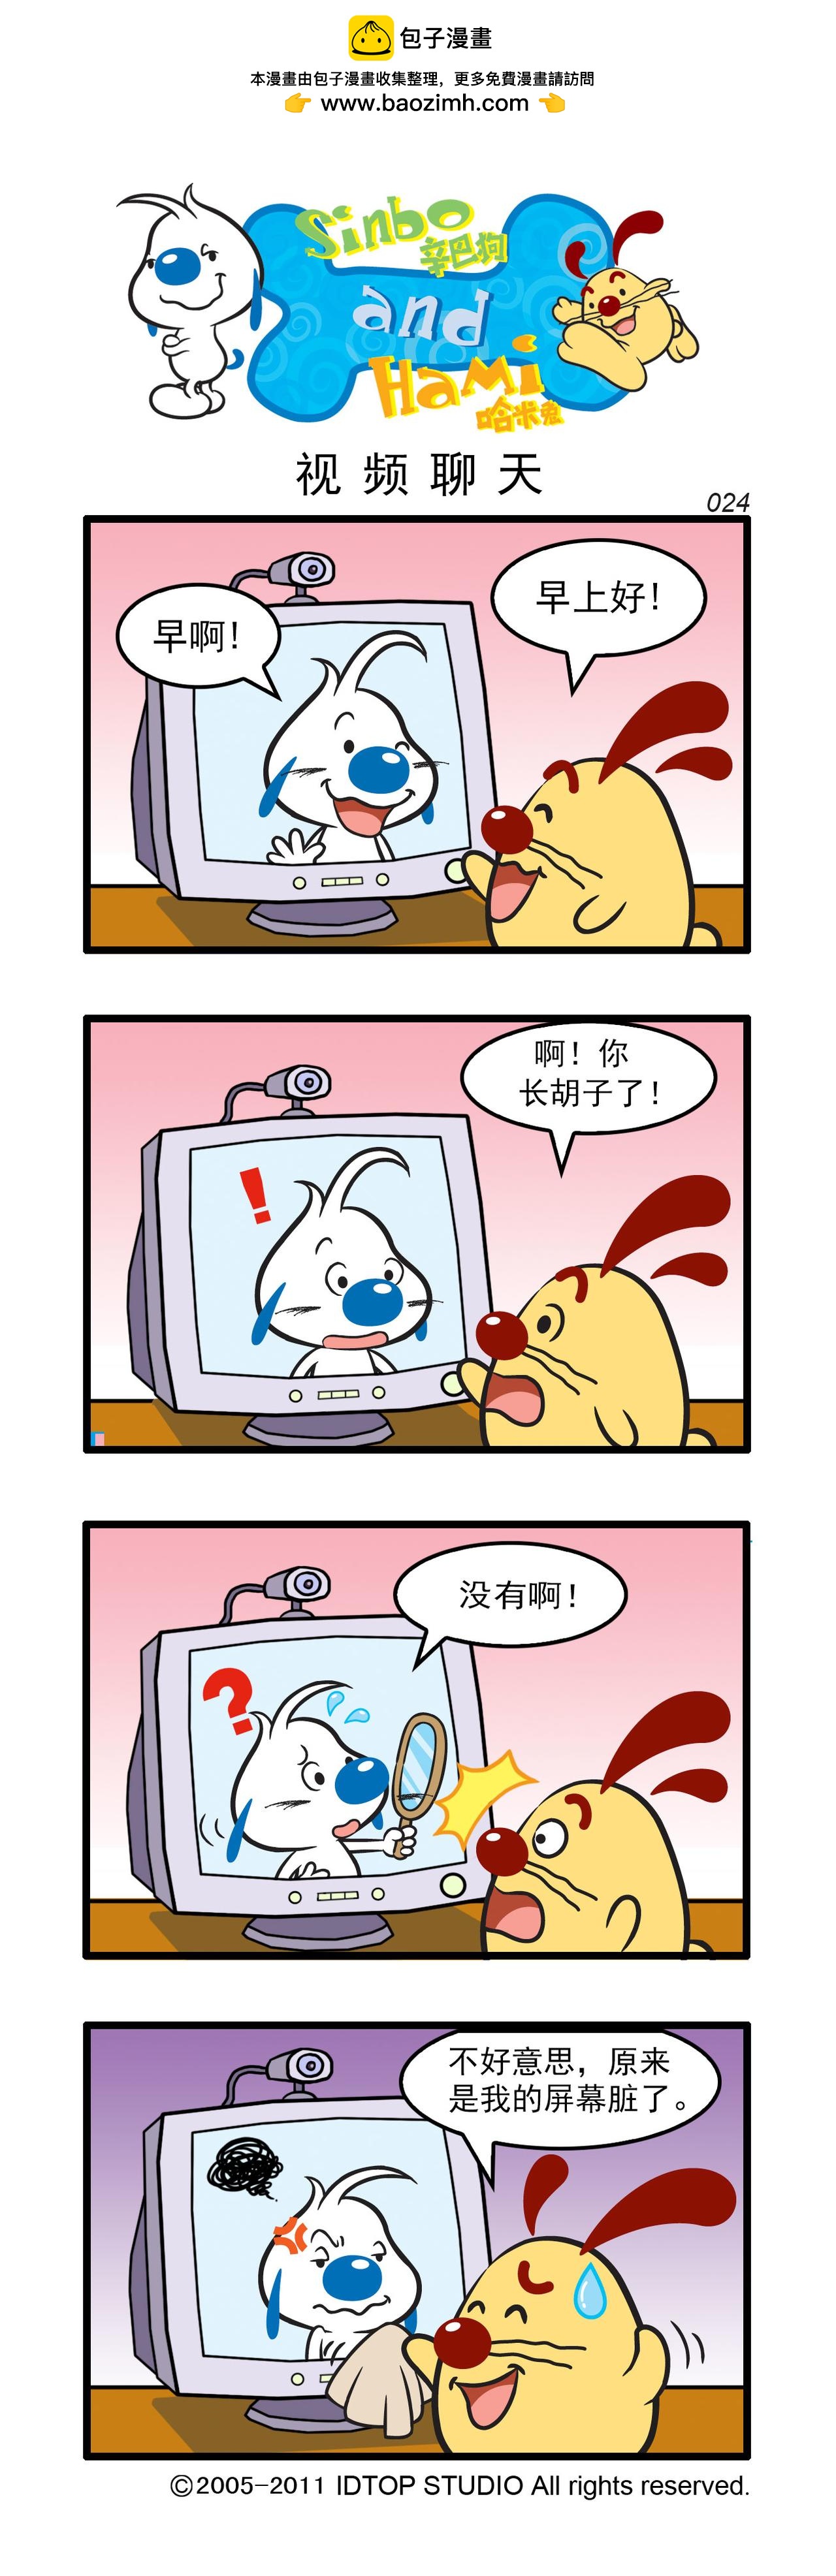 辛巴狗日常漫畫 - 多格7 - 1